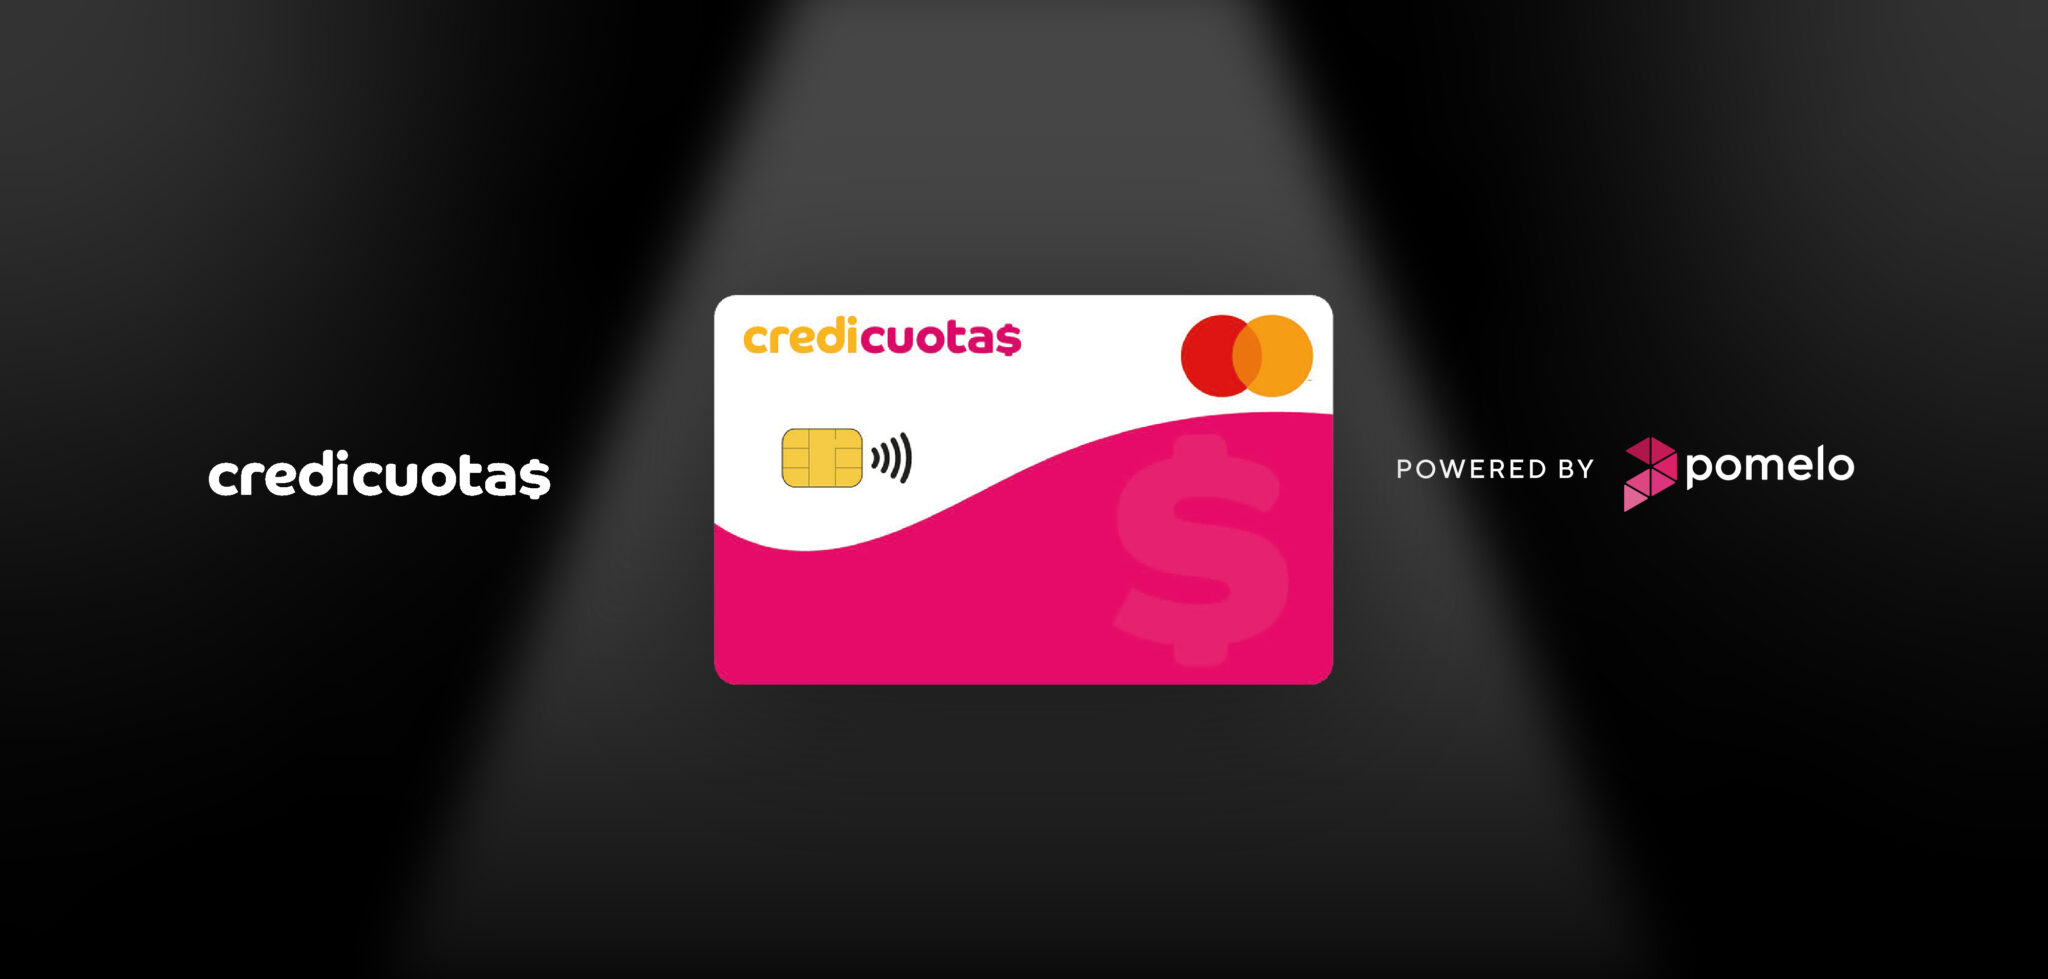 Credicuotas y Pomelo lanzan nueva tarjeta de crédito para mejorar la inclusión financiera en Argentina •